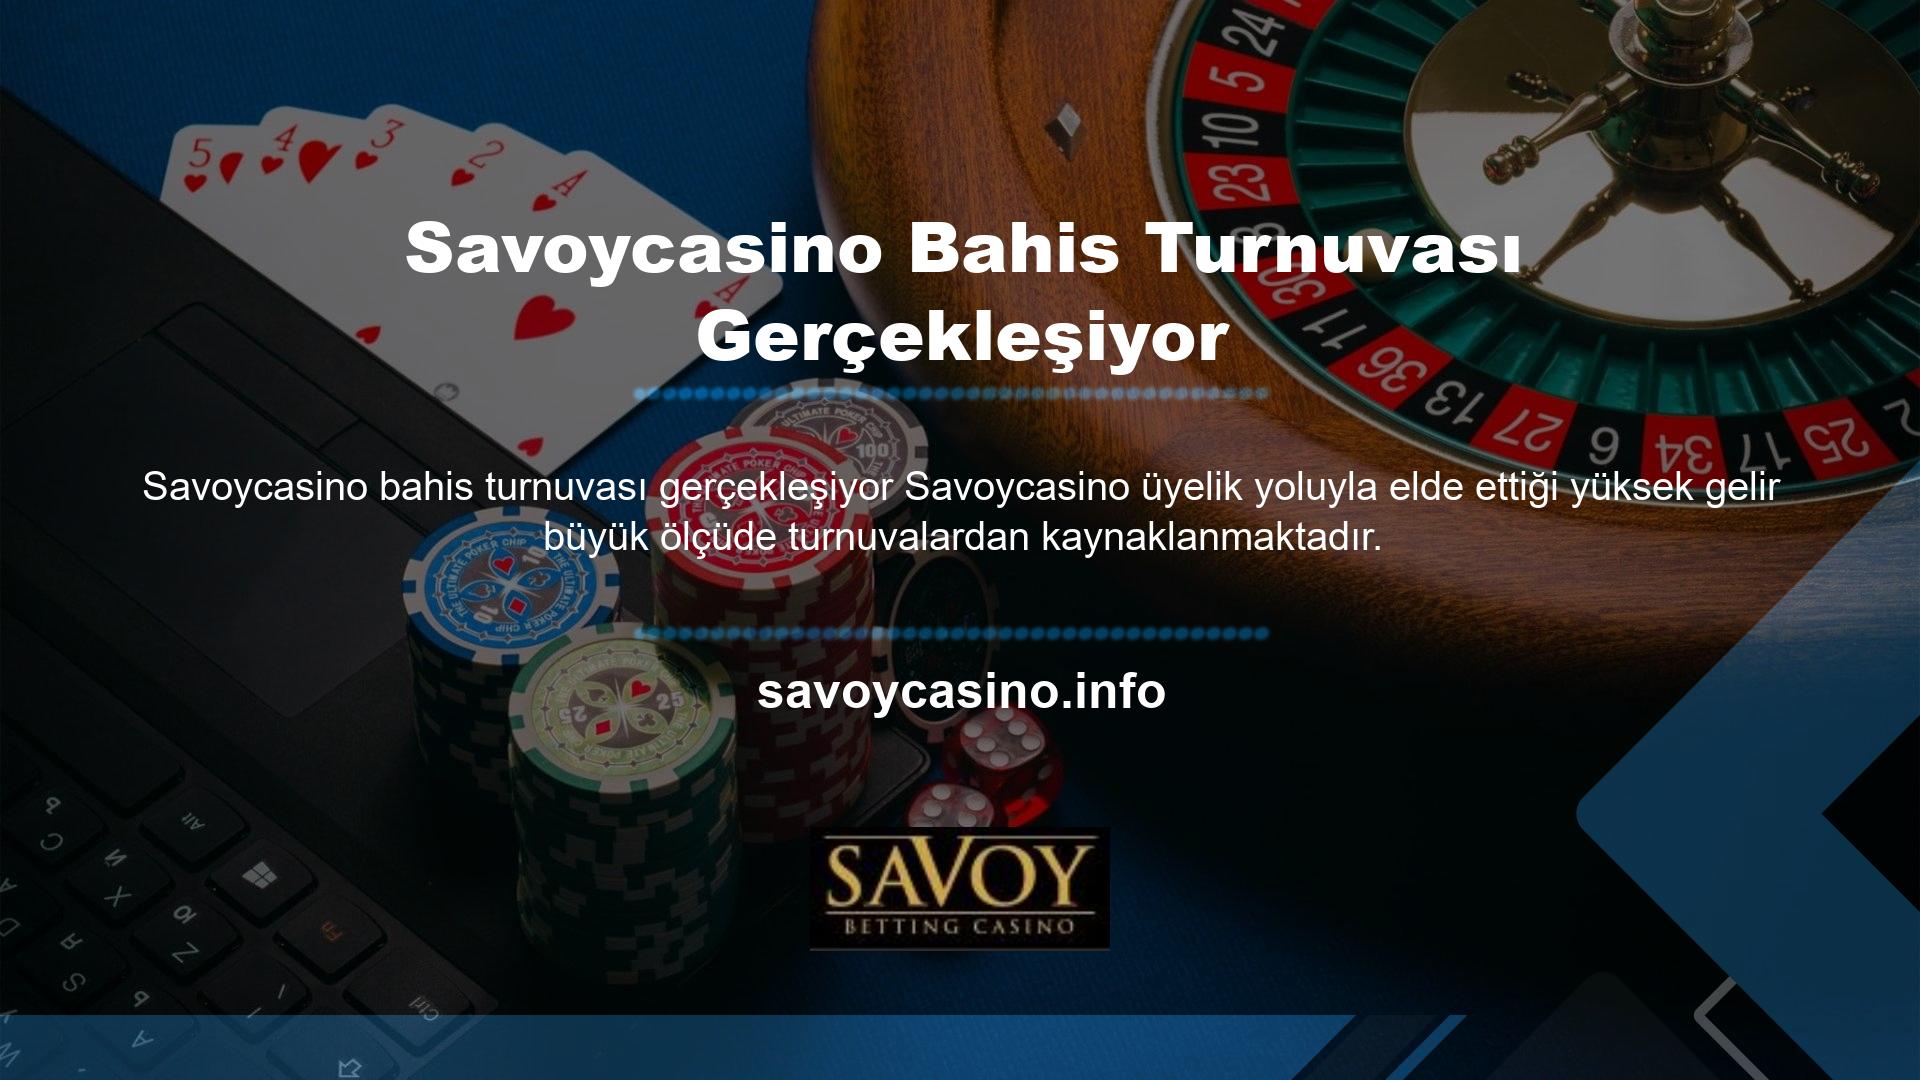 Savoycasino zaman zaman kazanılan paranın çok cömert olabileceği slot ve canlı casino turnuvaları düzenler